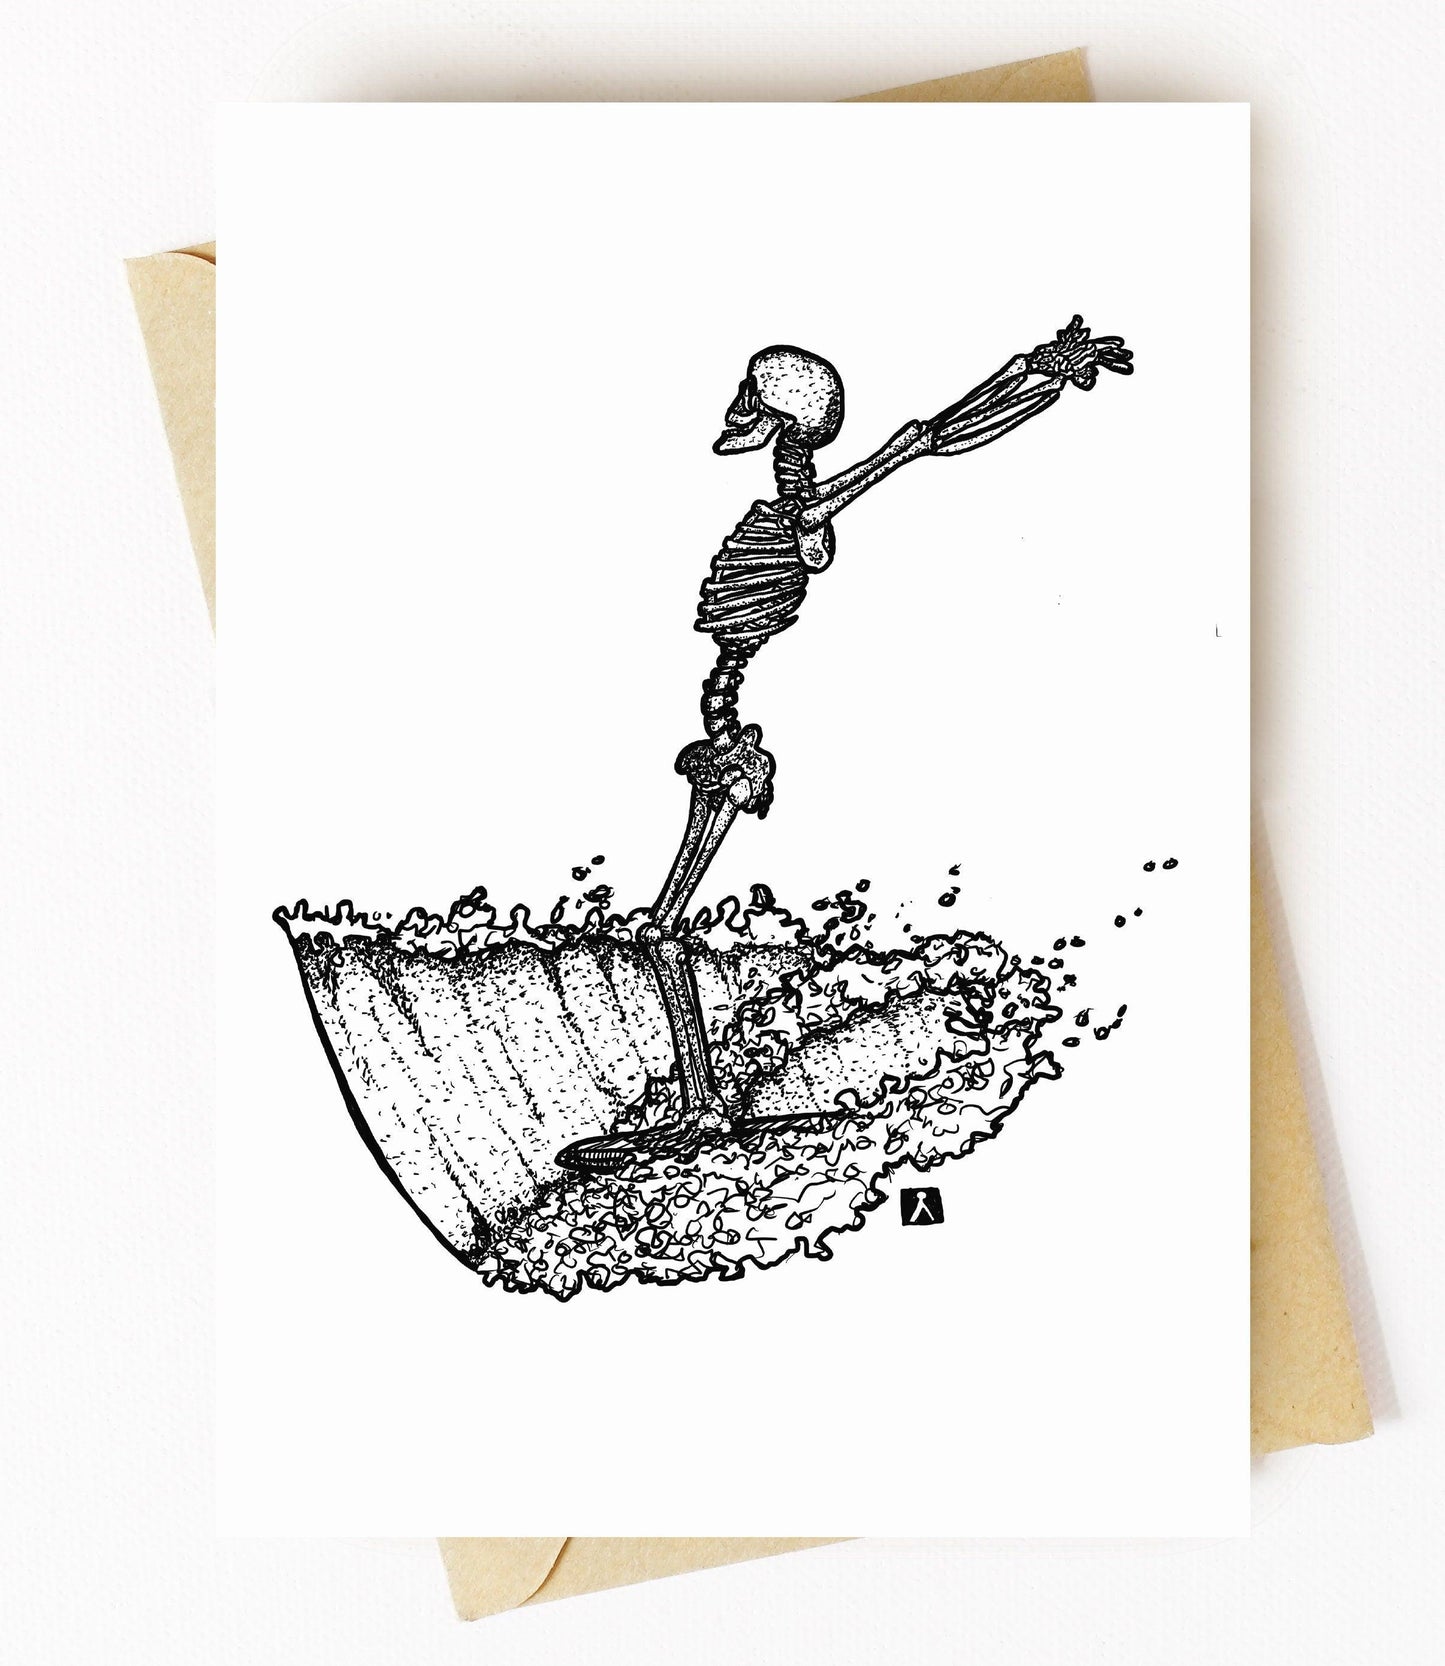 BellavanceInk: Greeting Card With Skeleton Surfing On His Longboard 5 x 7 Inches - BellavanceInk